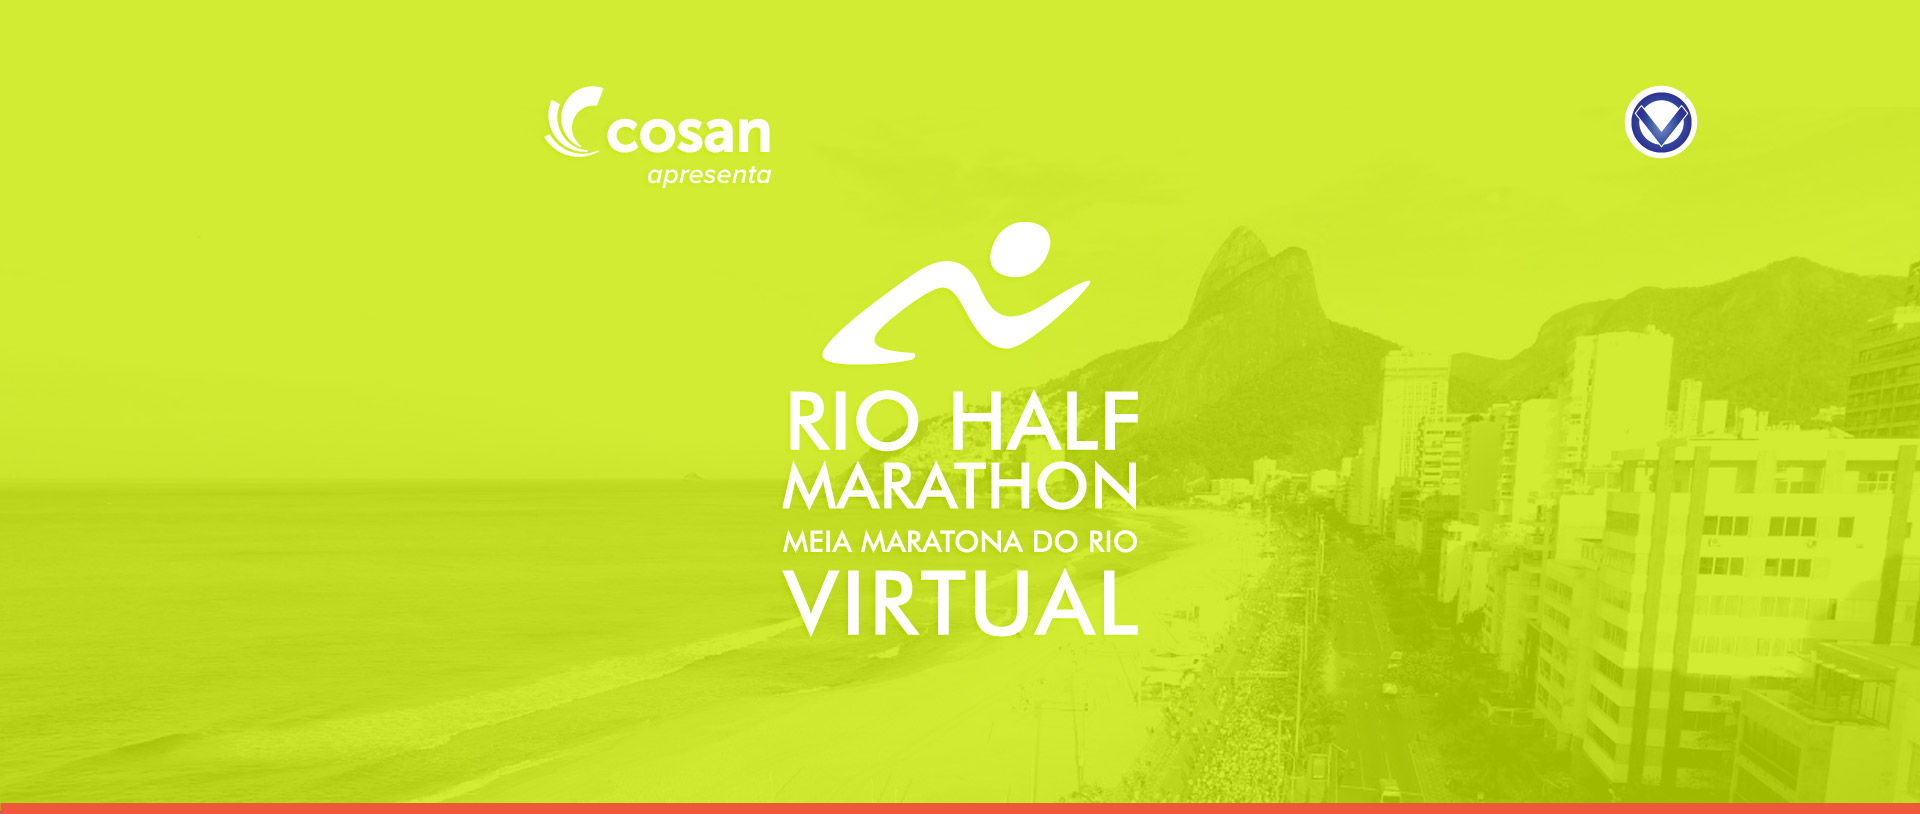 Meia Maratona do Rio de Janeiro Virtual 2ª Edição